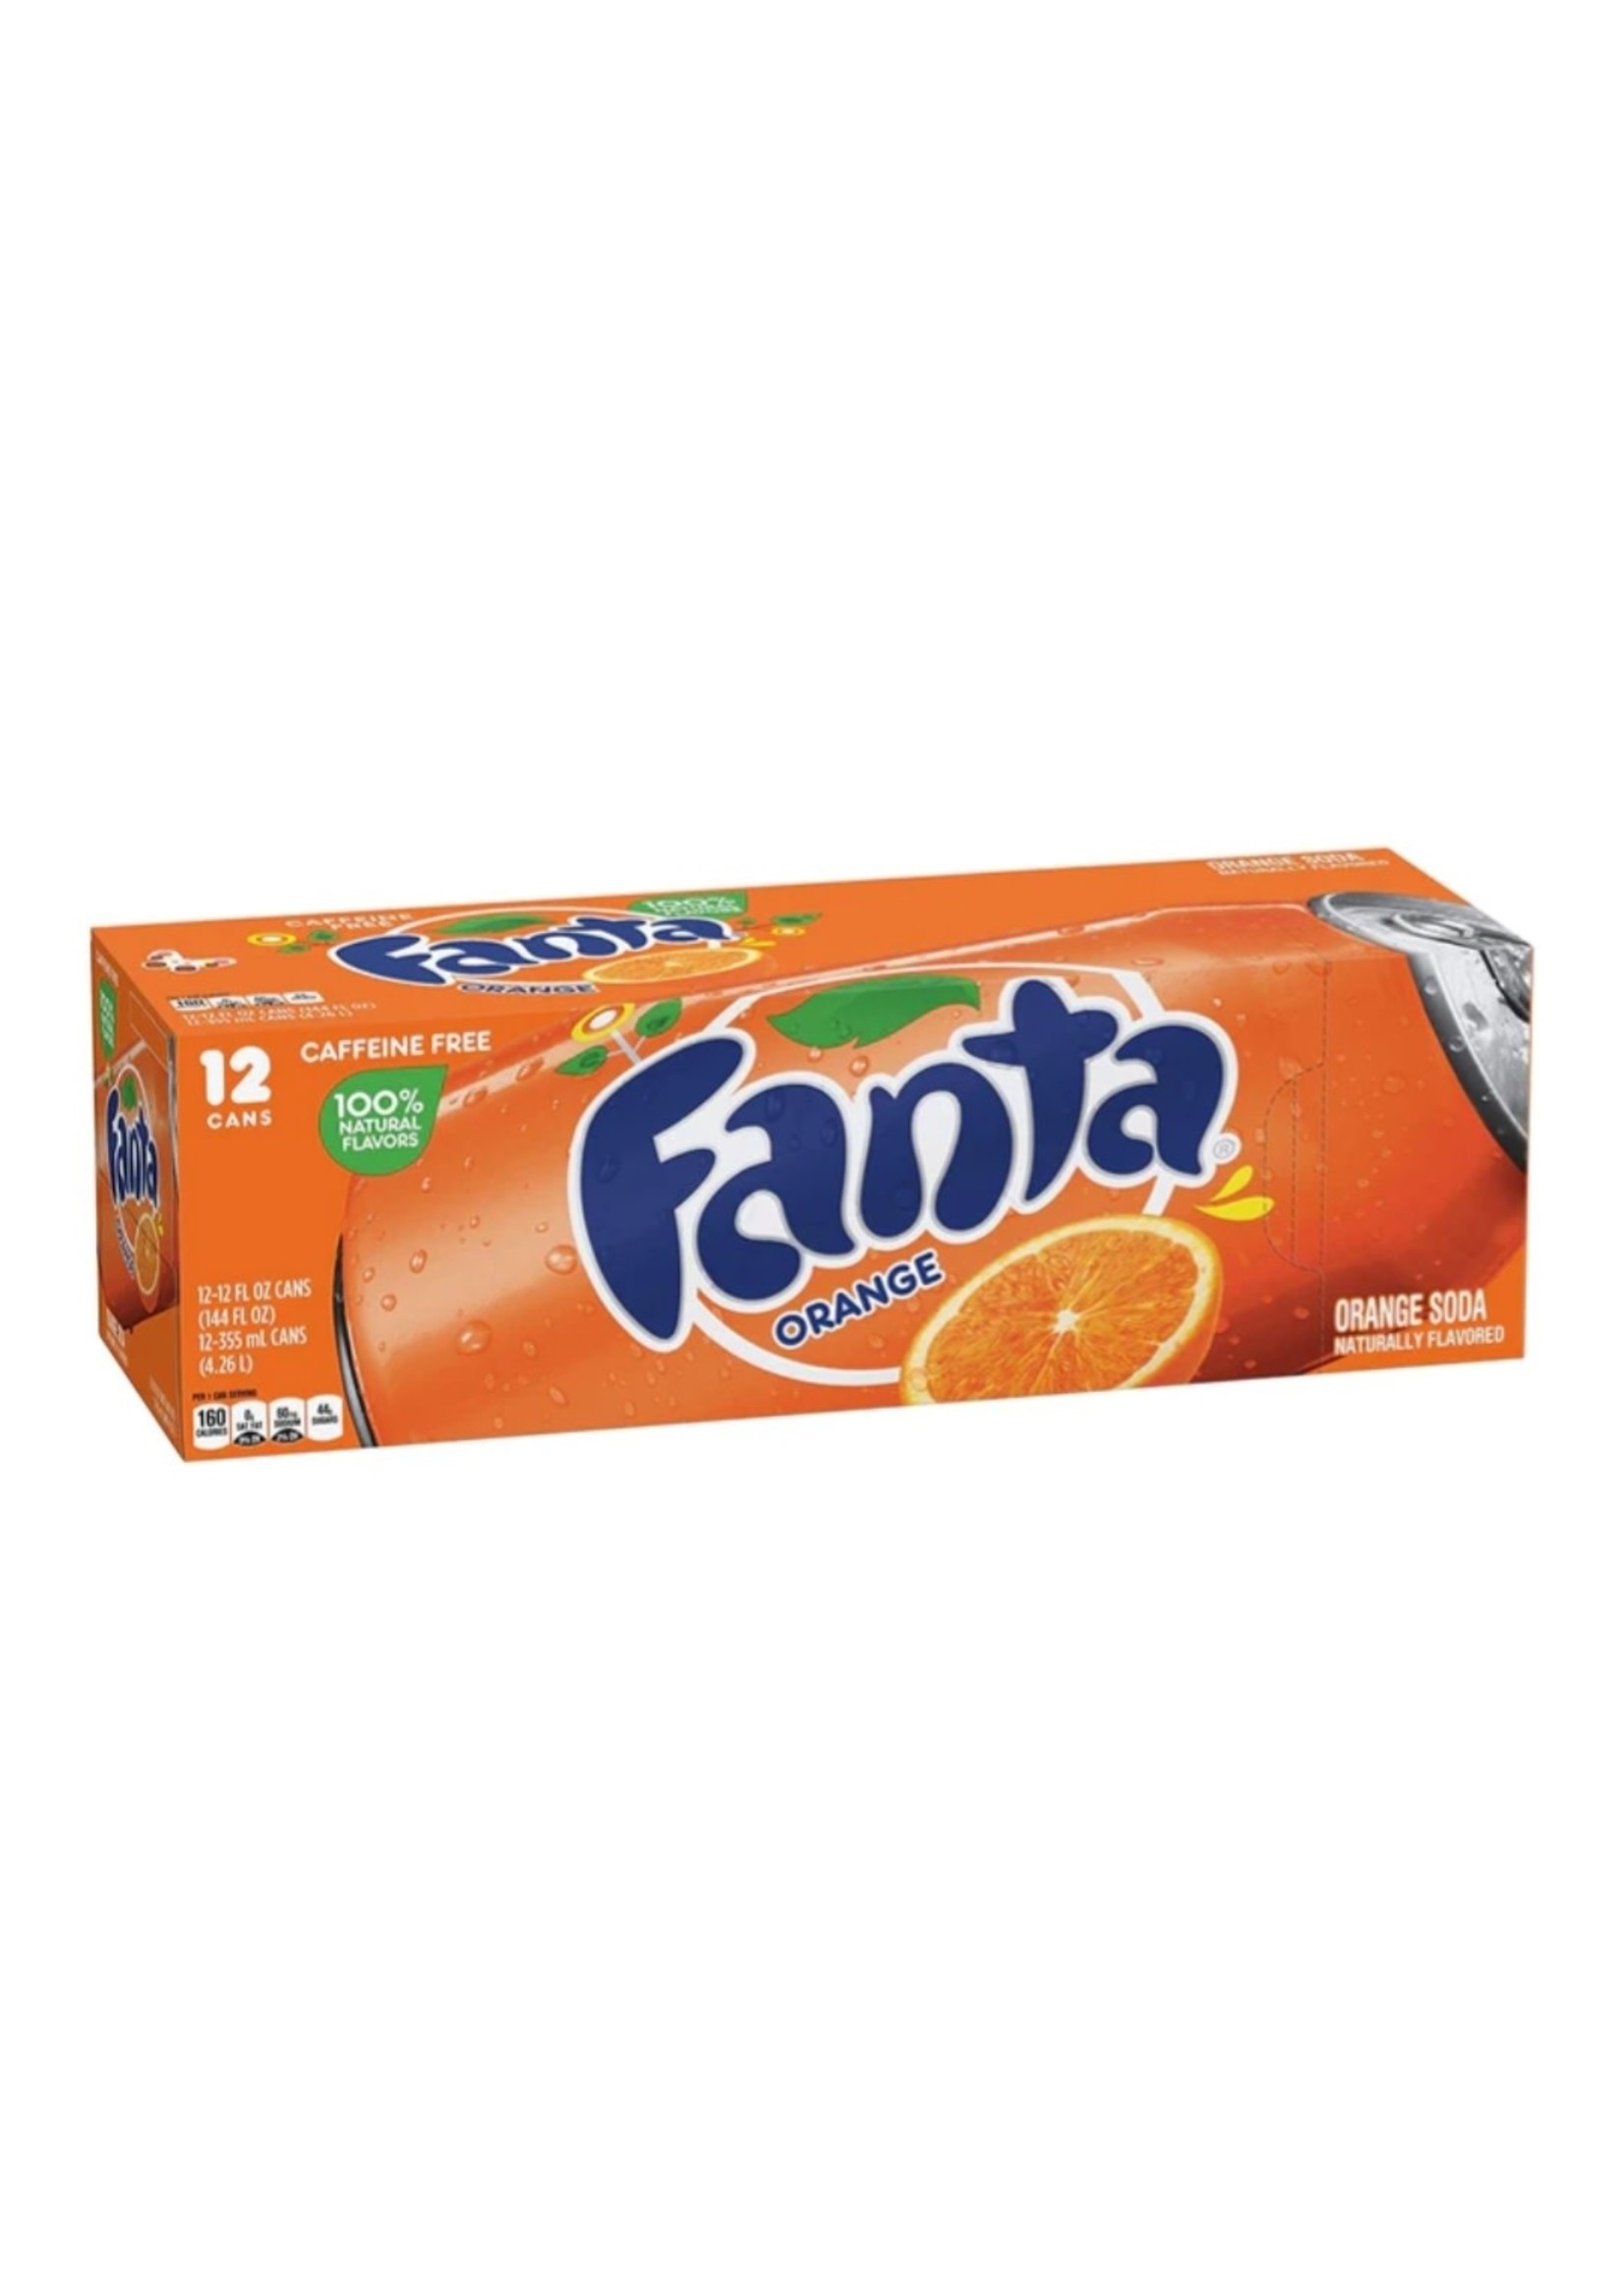 Fanta 116151- Fanta Orange Soda Fridge Pack Cans, 12 fl oz, 12 Pack, 2 Sets